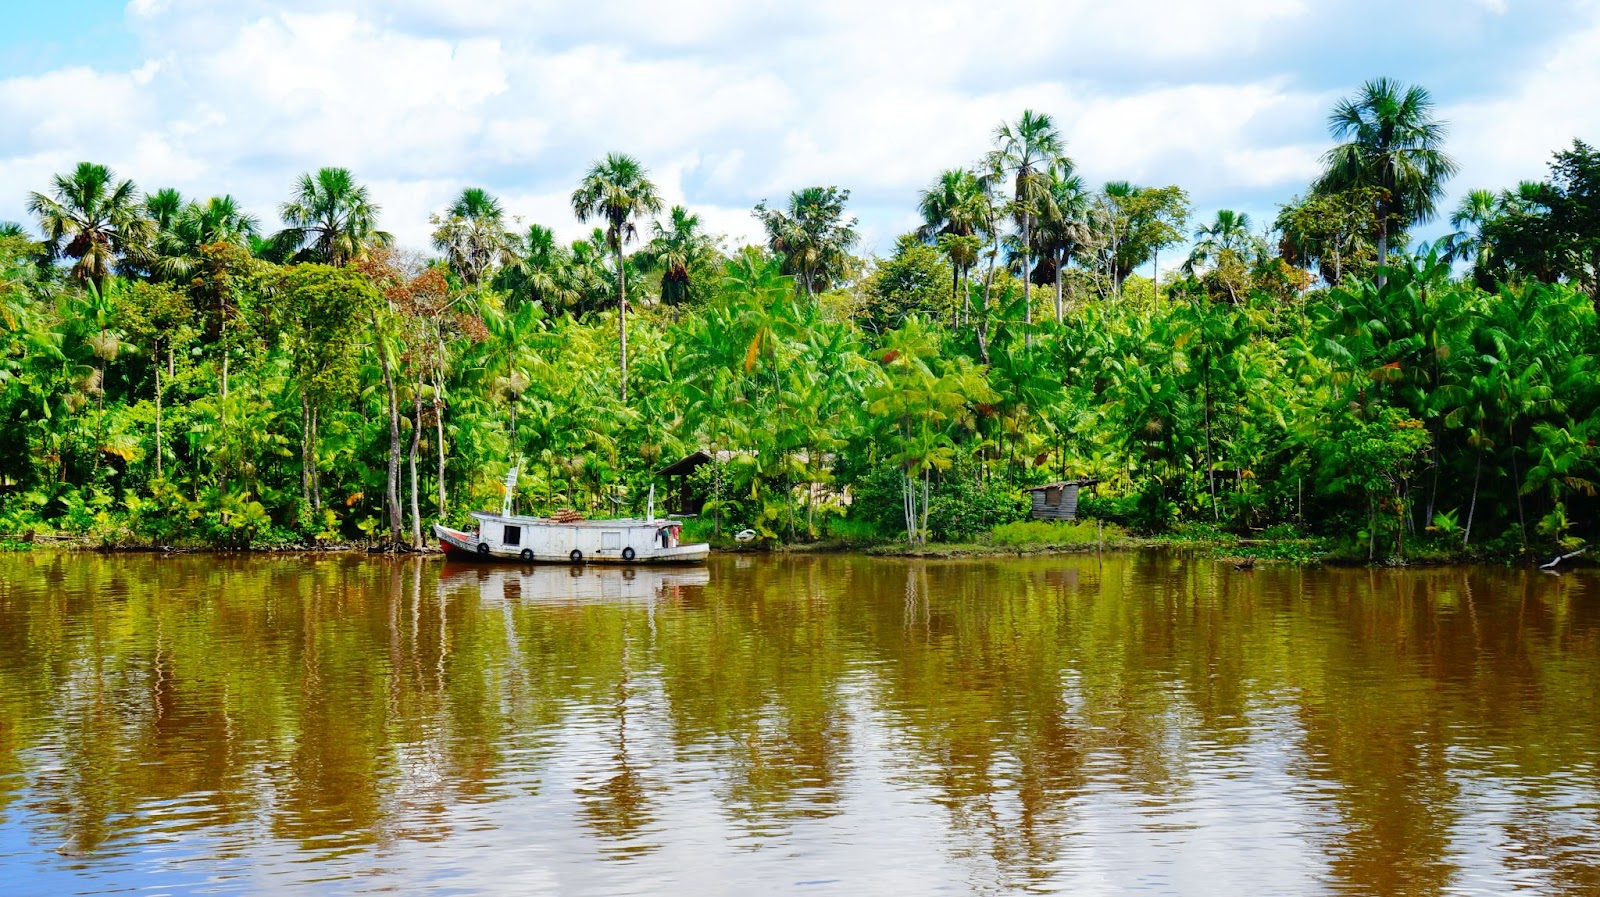 Jangada no Rio Amazonas. Águas esverdeadas, refletindo a vegetação que o cerca